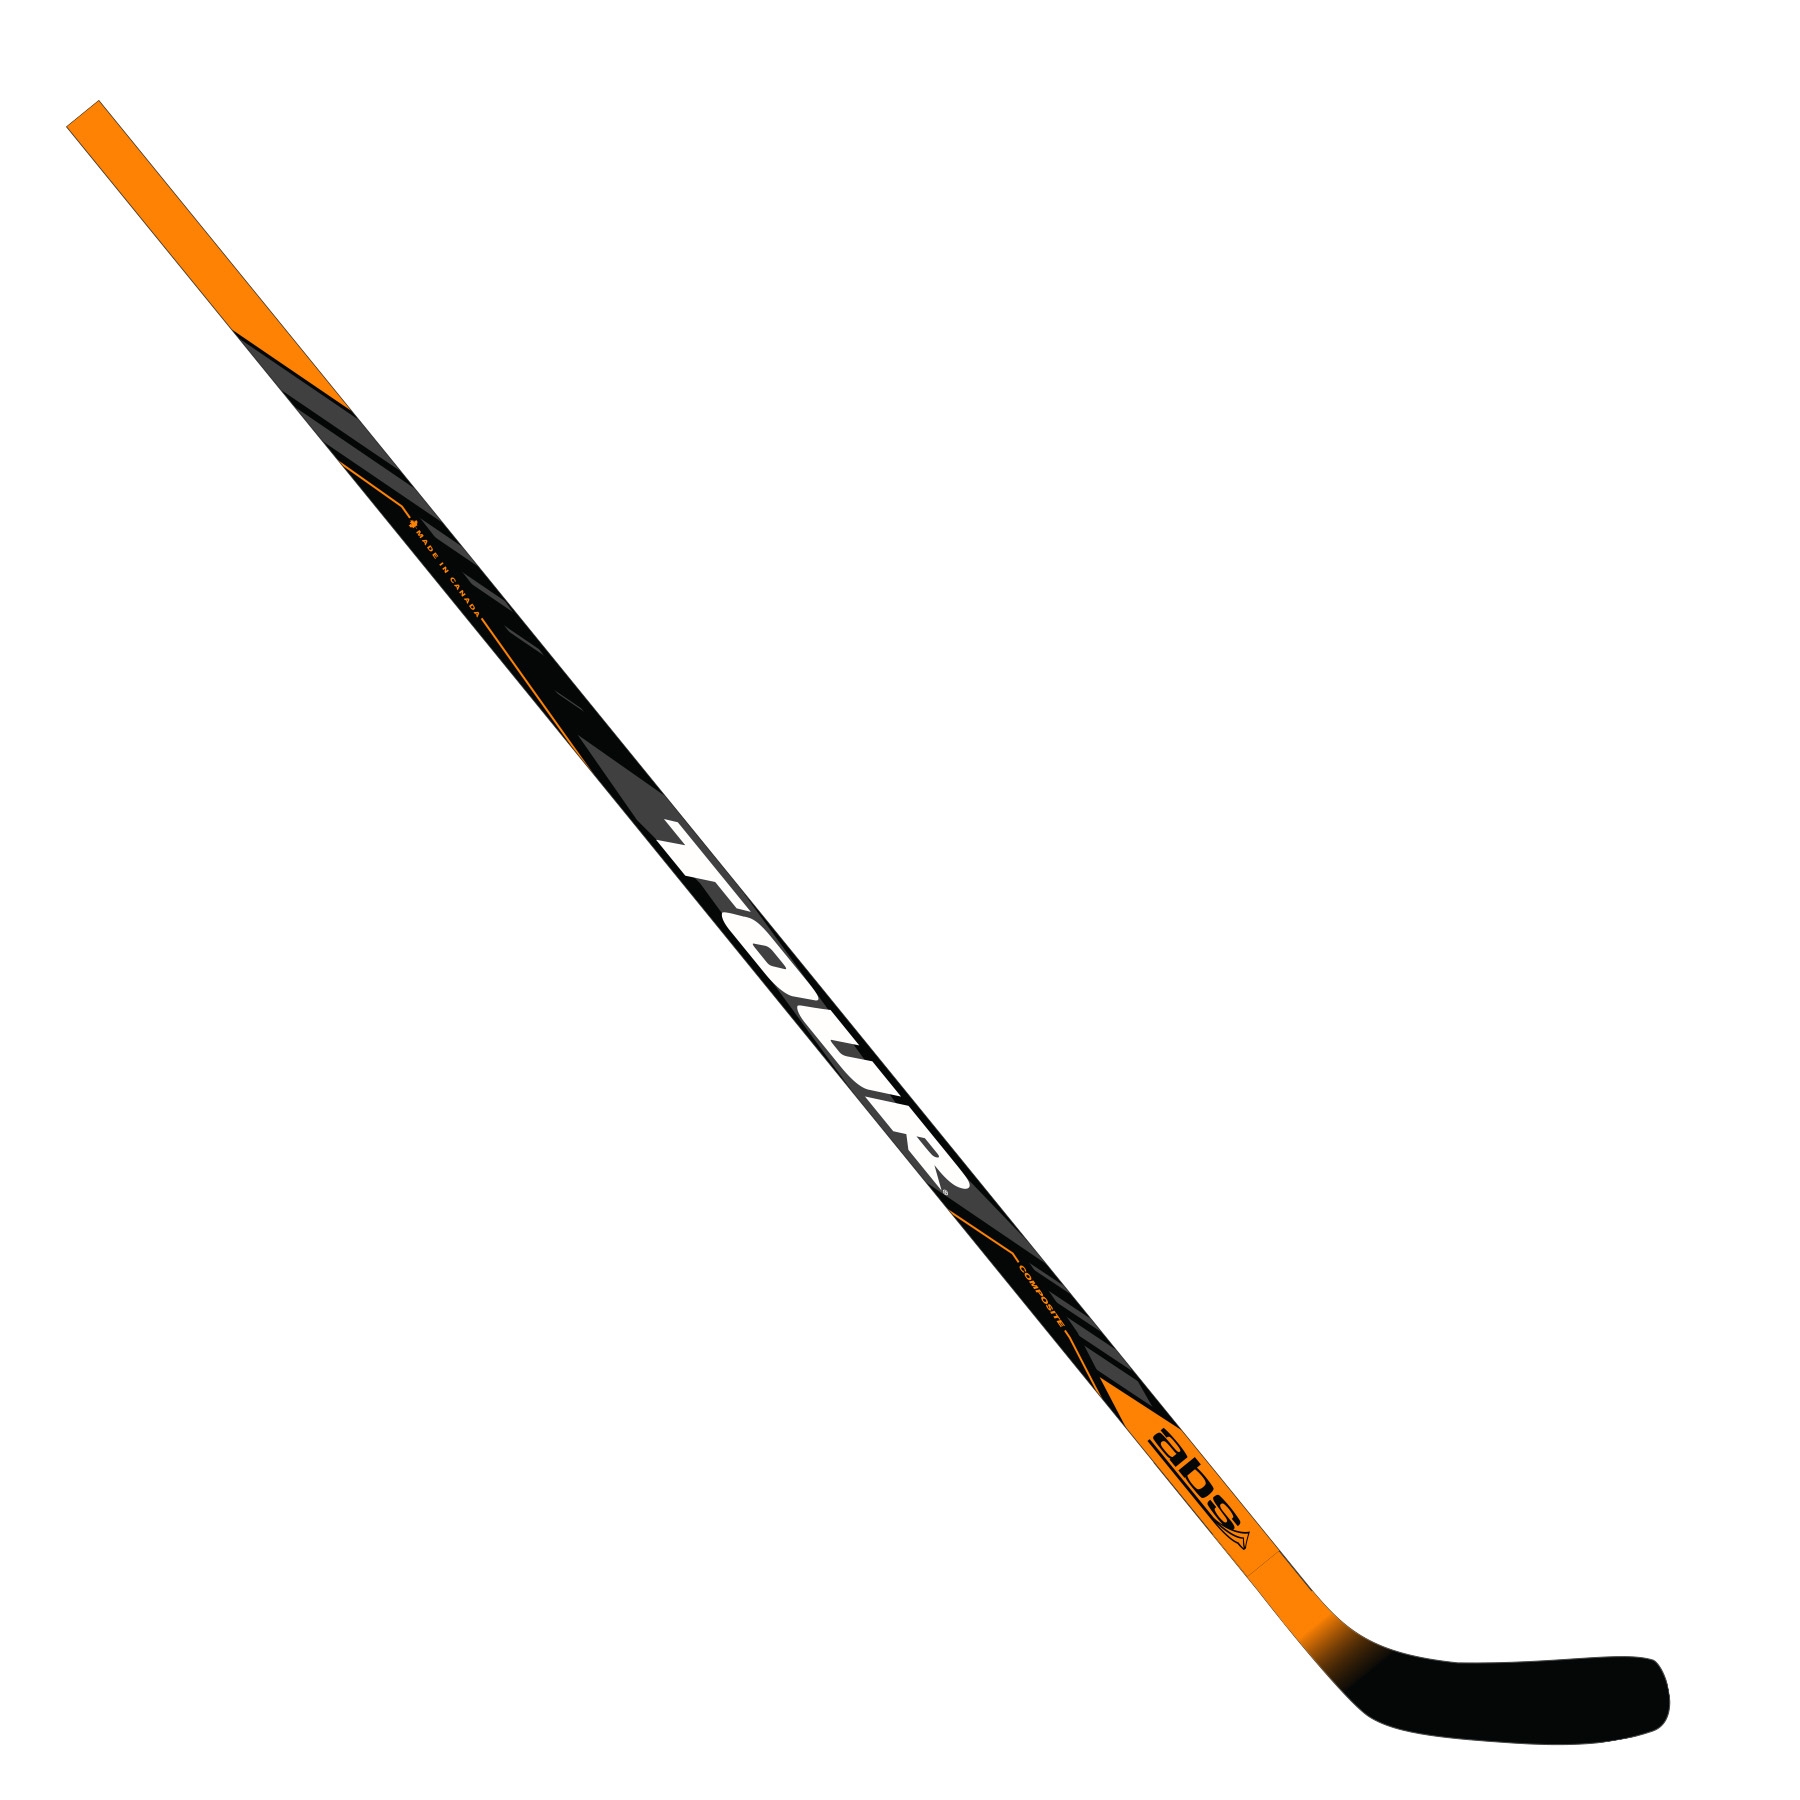 Q-40 Composite Hockey Stick